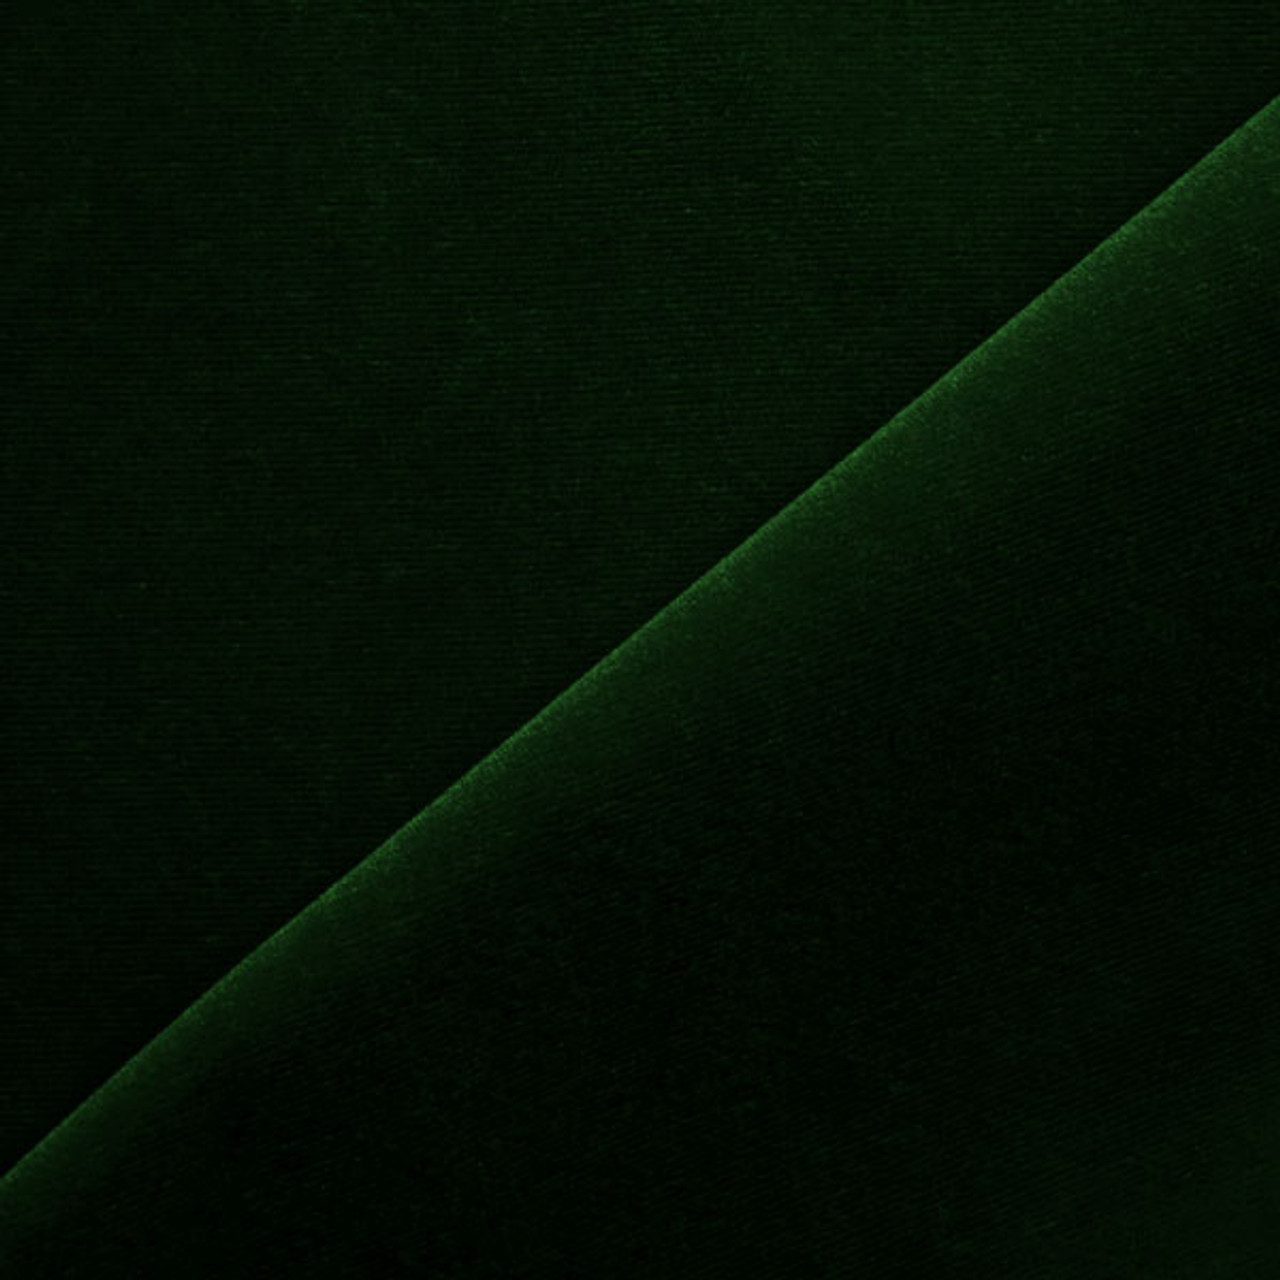 Dark Green Velvet Upholstery Fabric by the Yard - Green Velvet Dark Green  Velvet Fabric